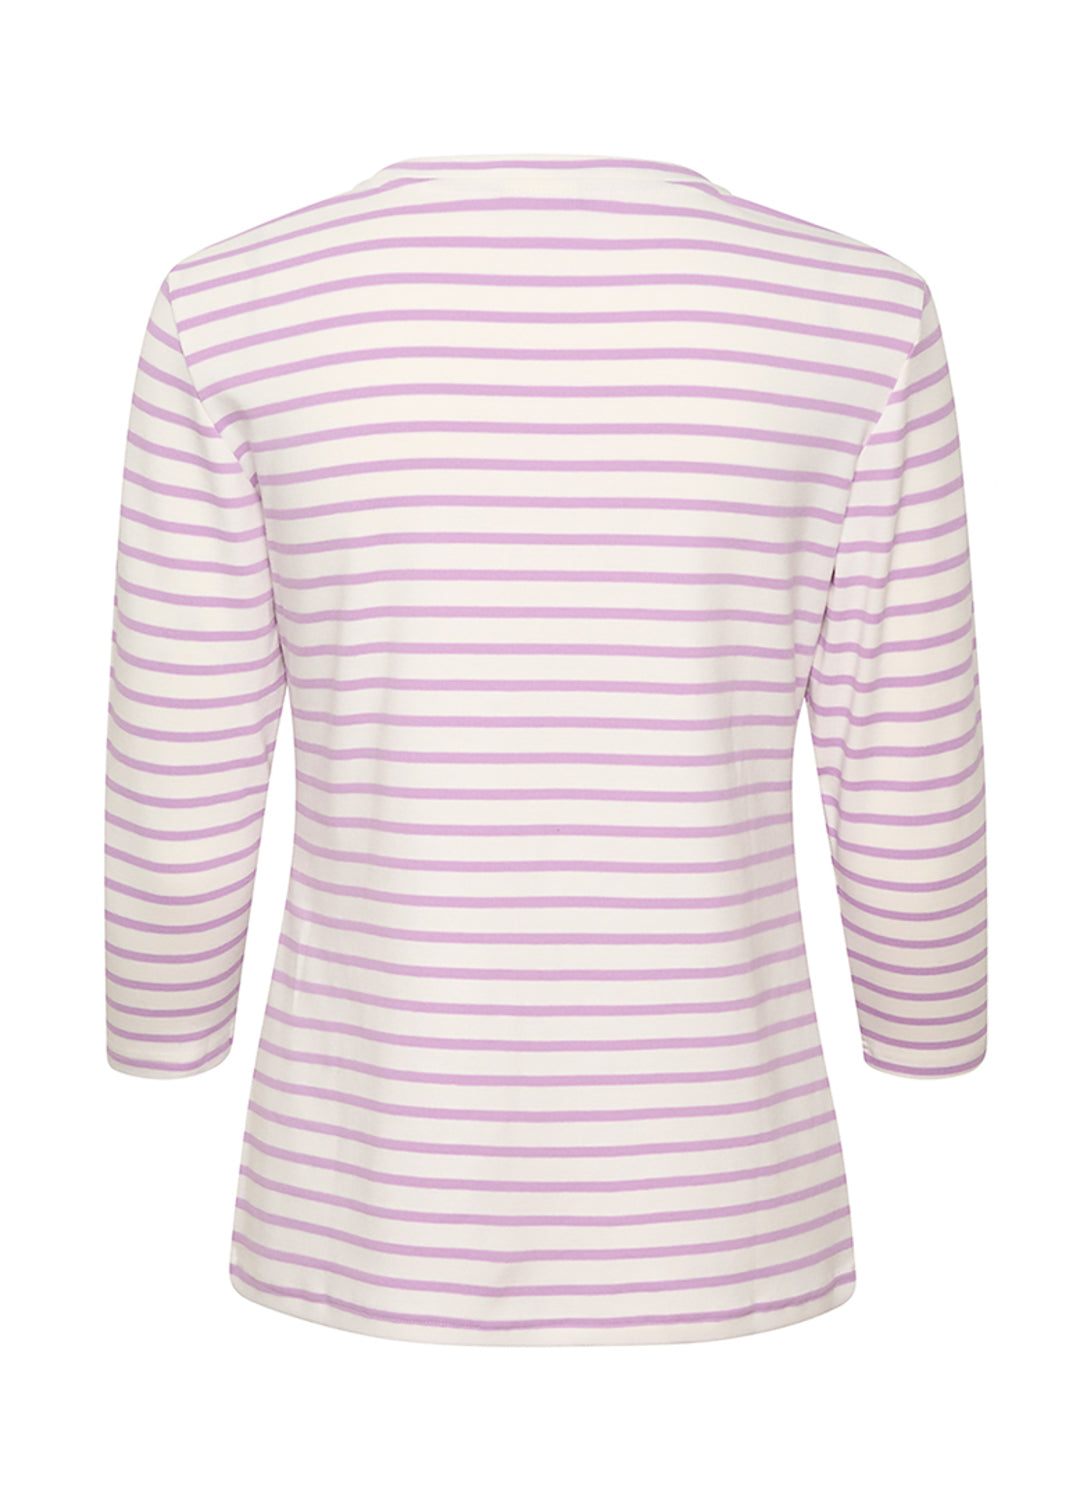 Kaliddy Shirt - Chalk and Lupine Stripe